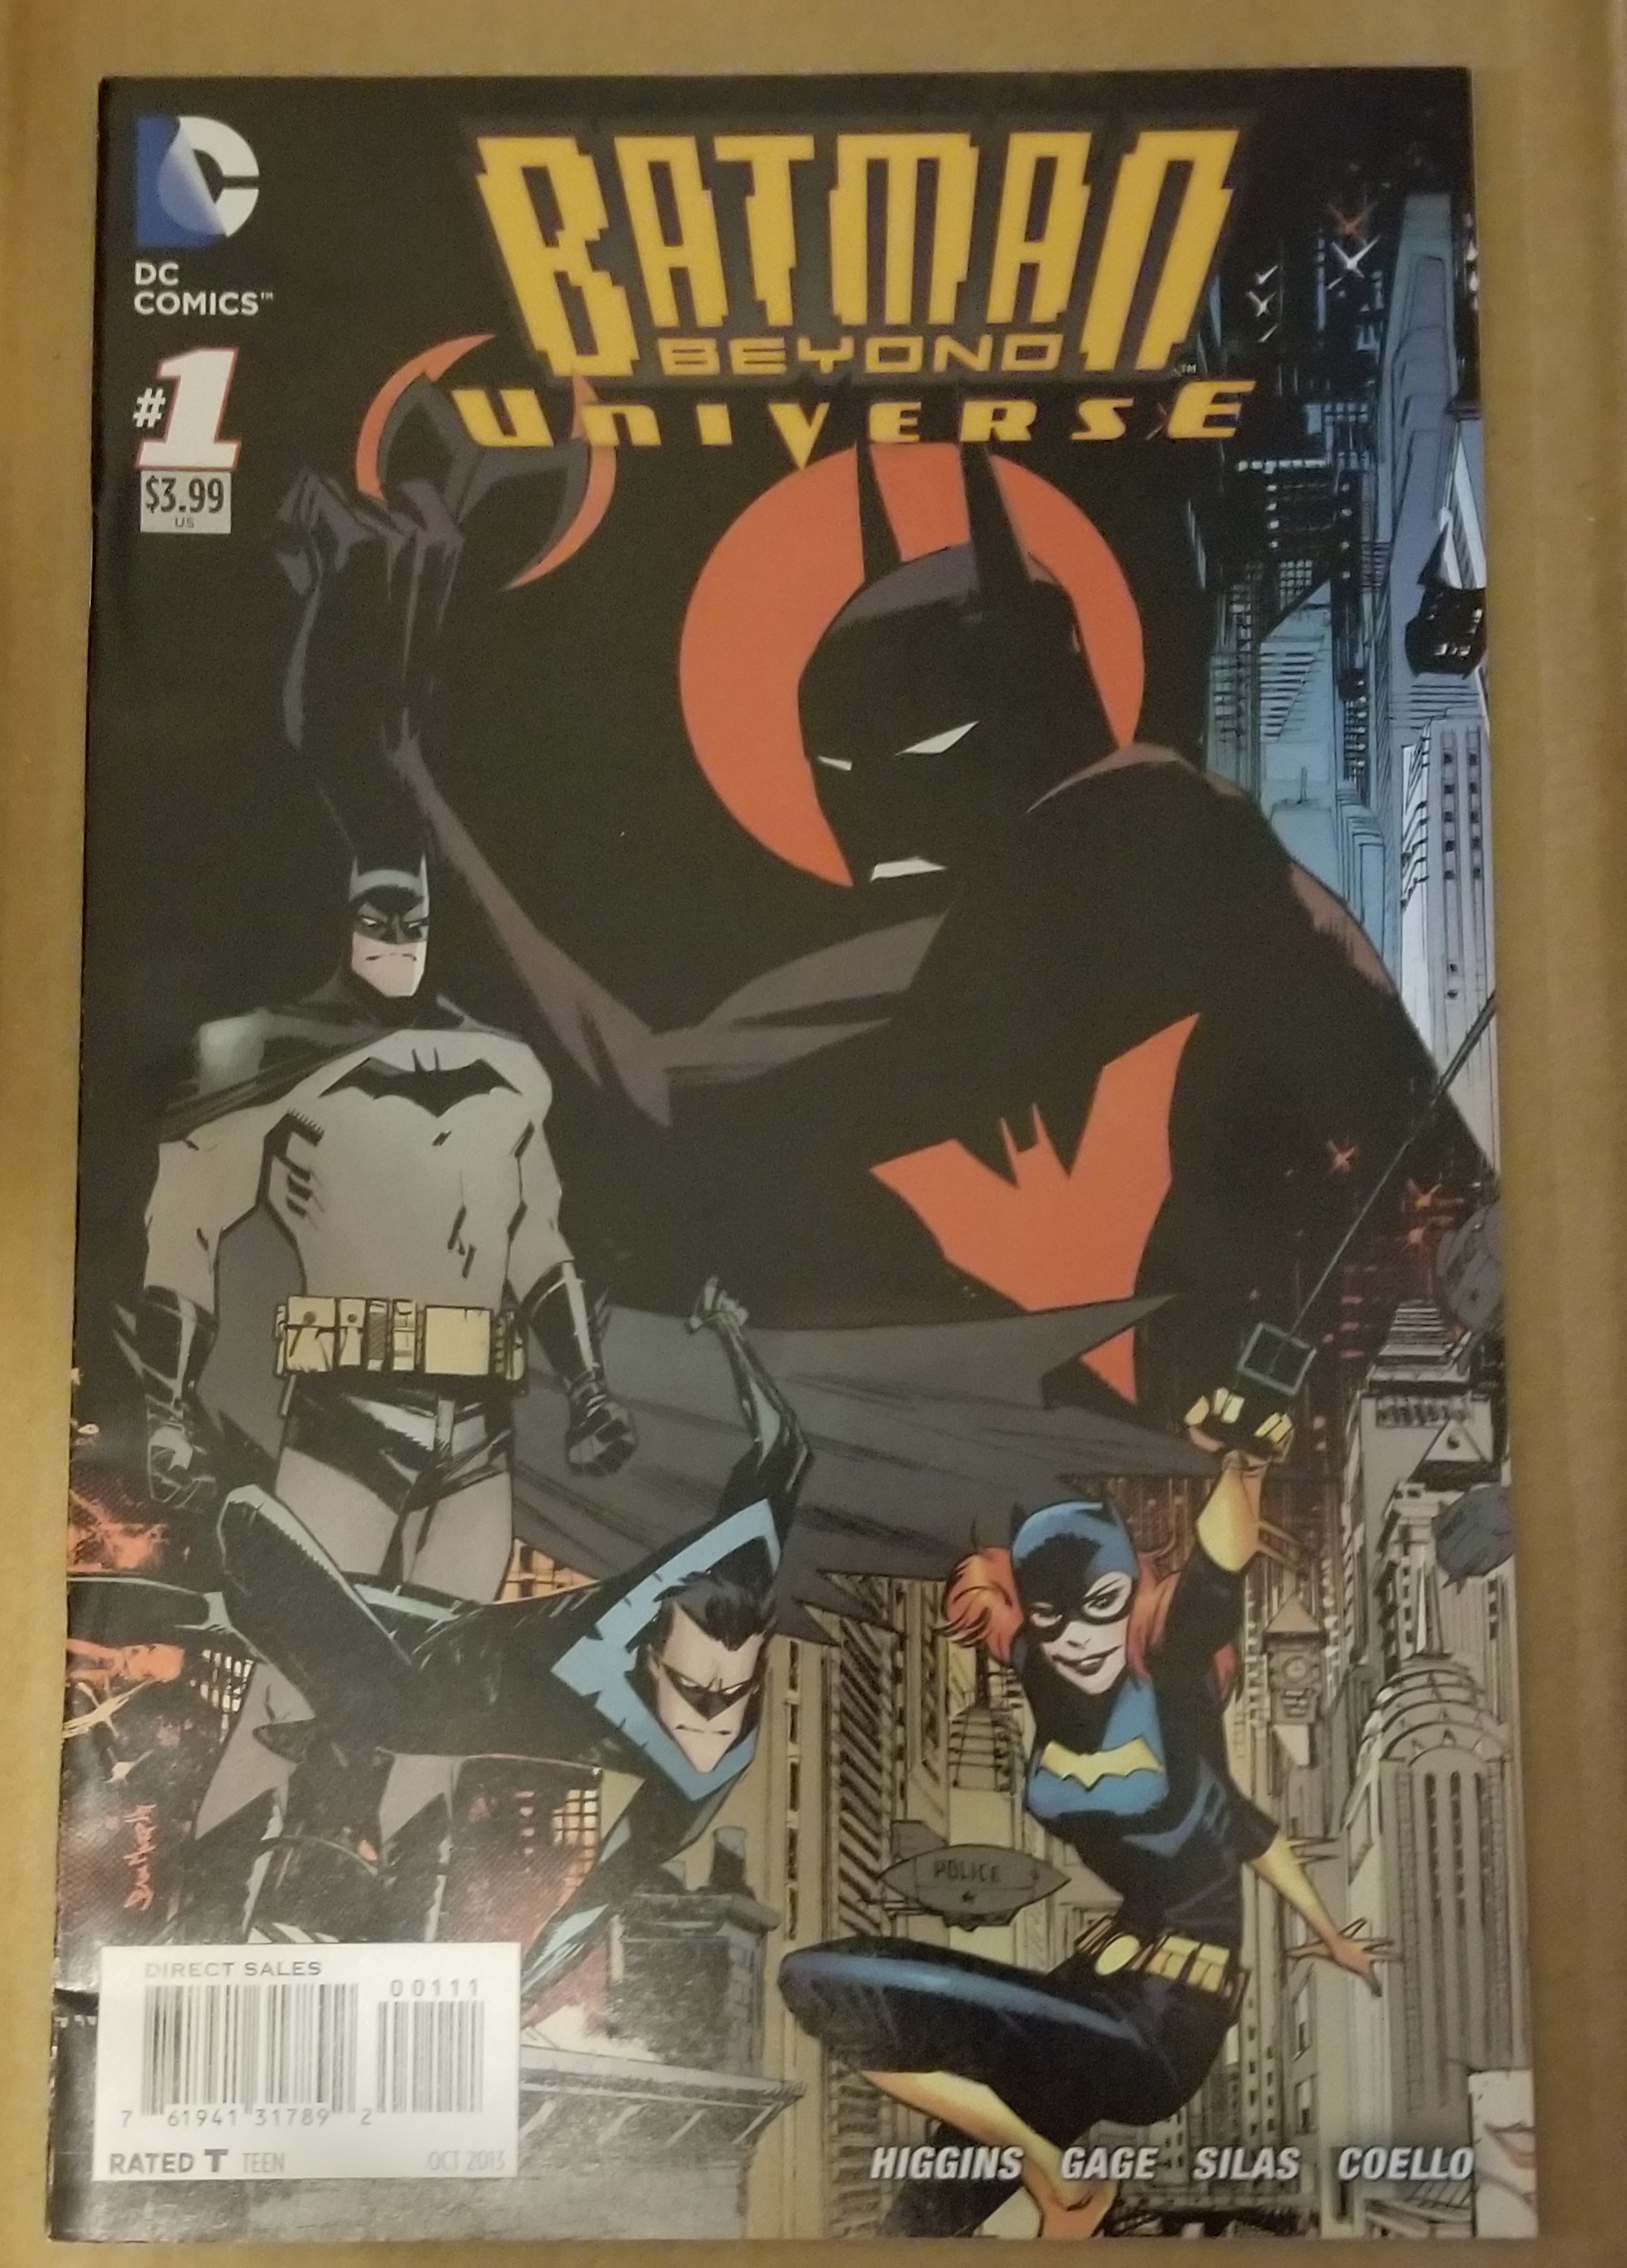 Batman Beyond Universe #1 | Comic Books - Modern Age, DC Comics, Batman,  Superhero / HipComic